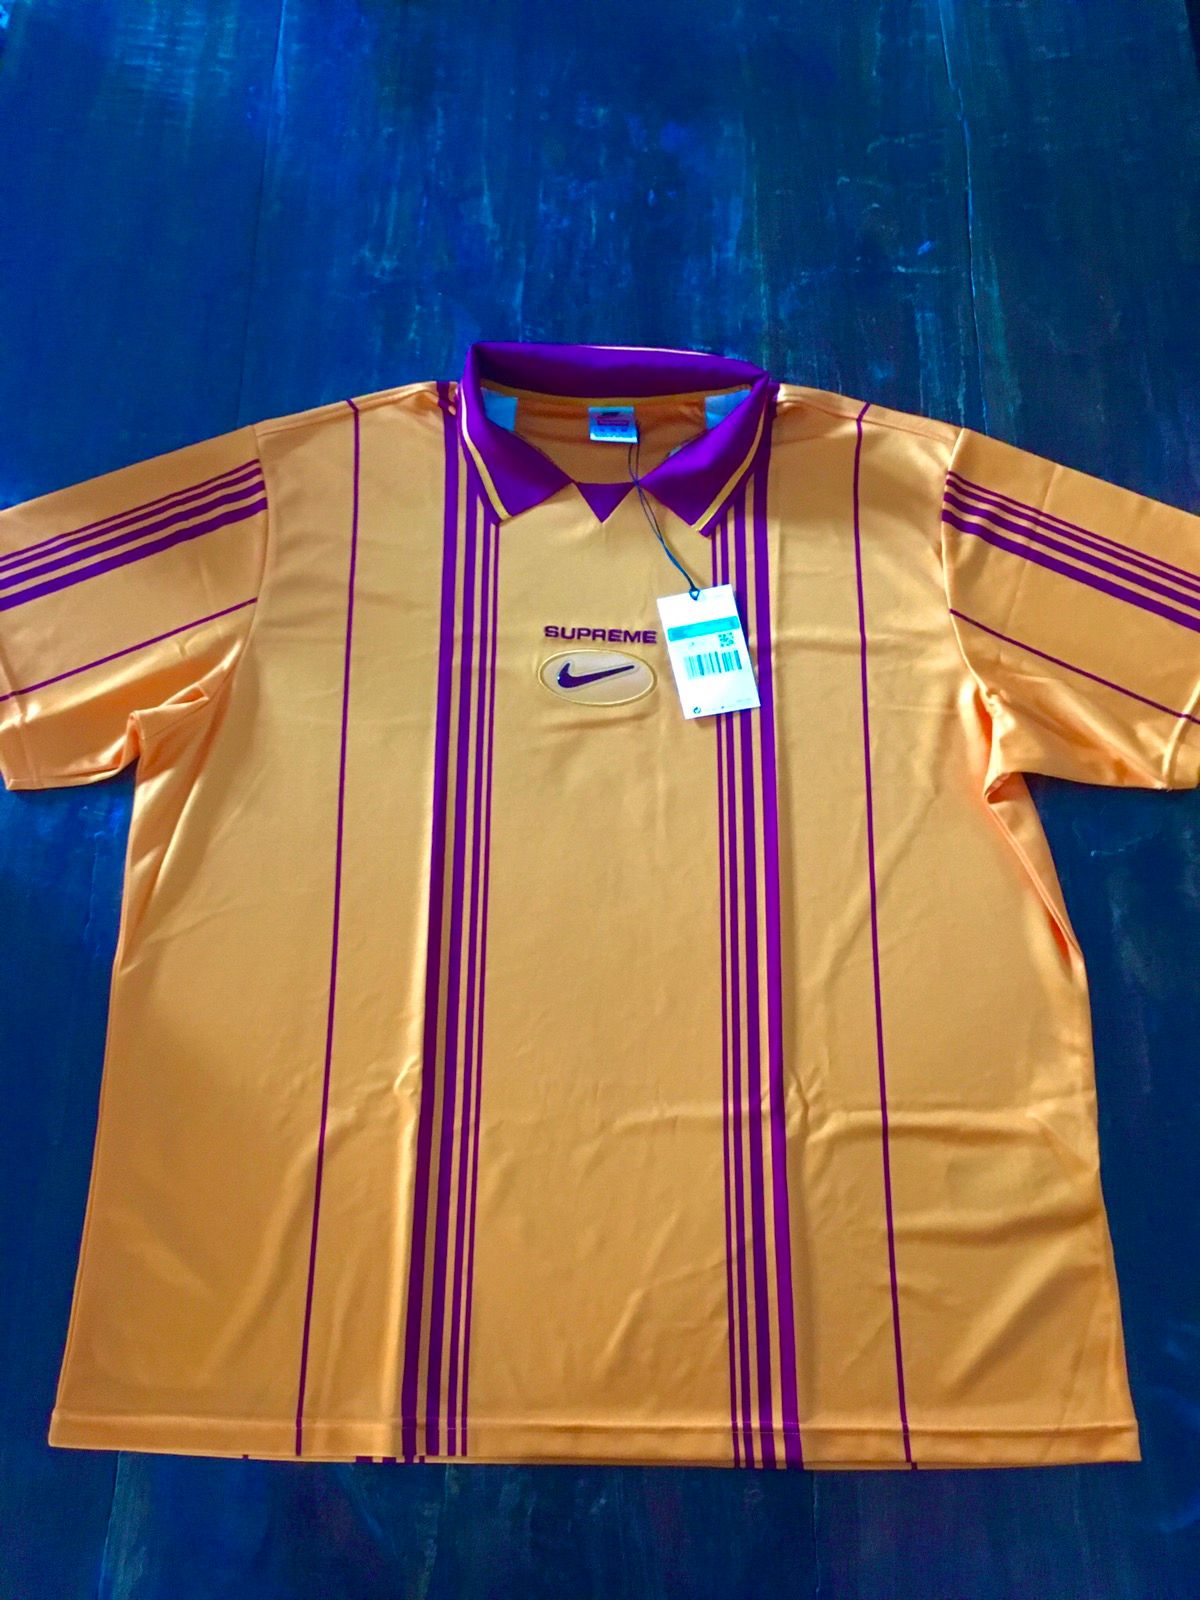 supreme×nike jewel stripe soccer jersey